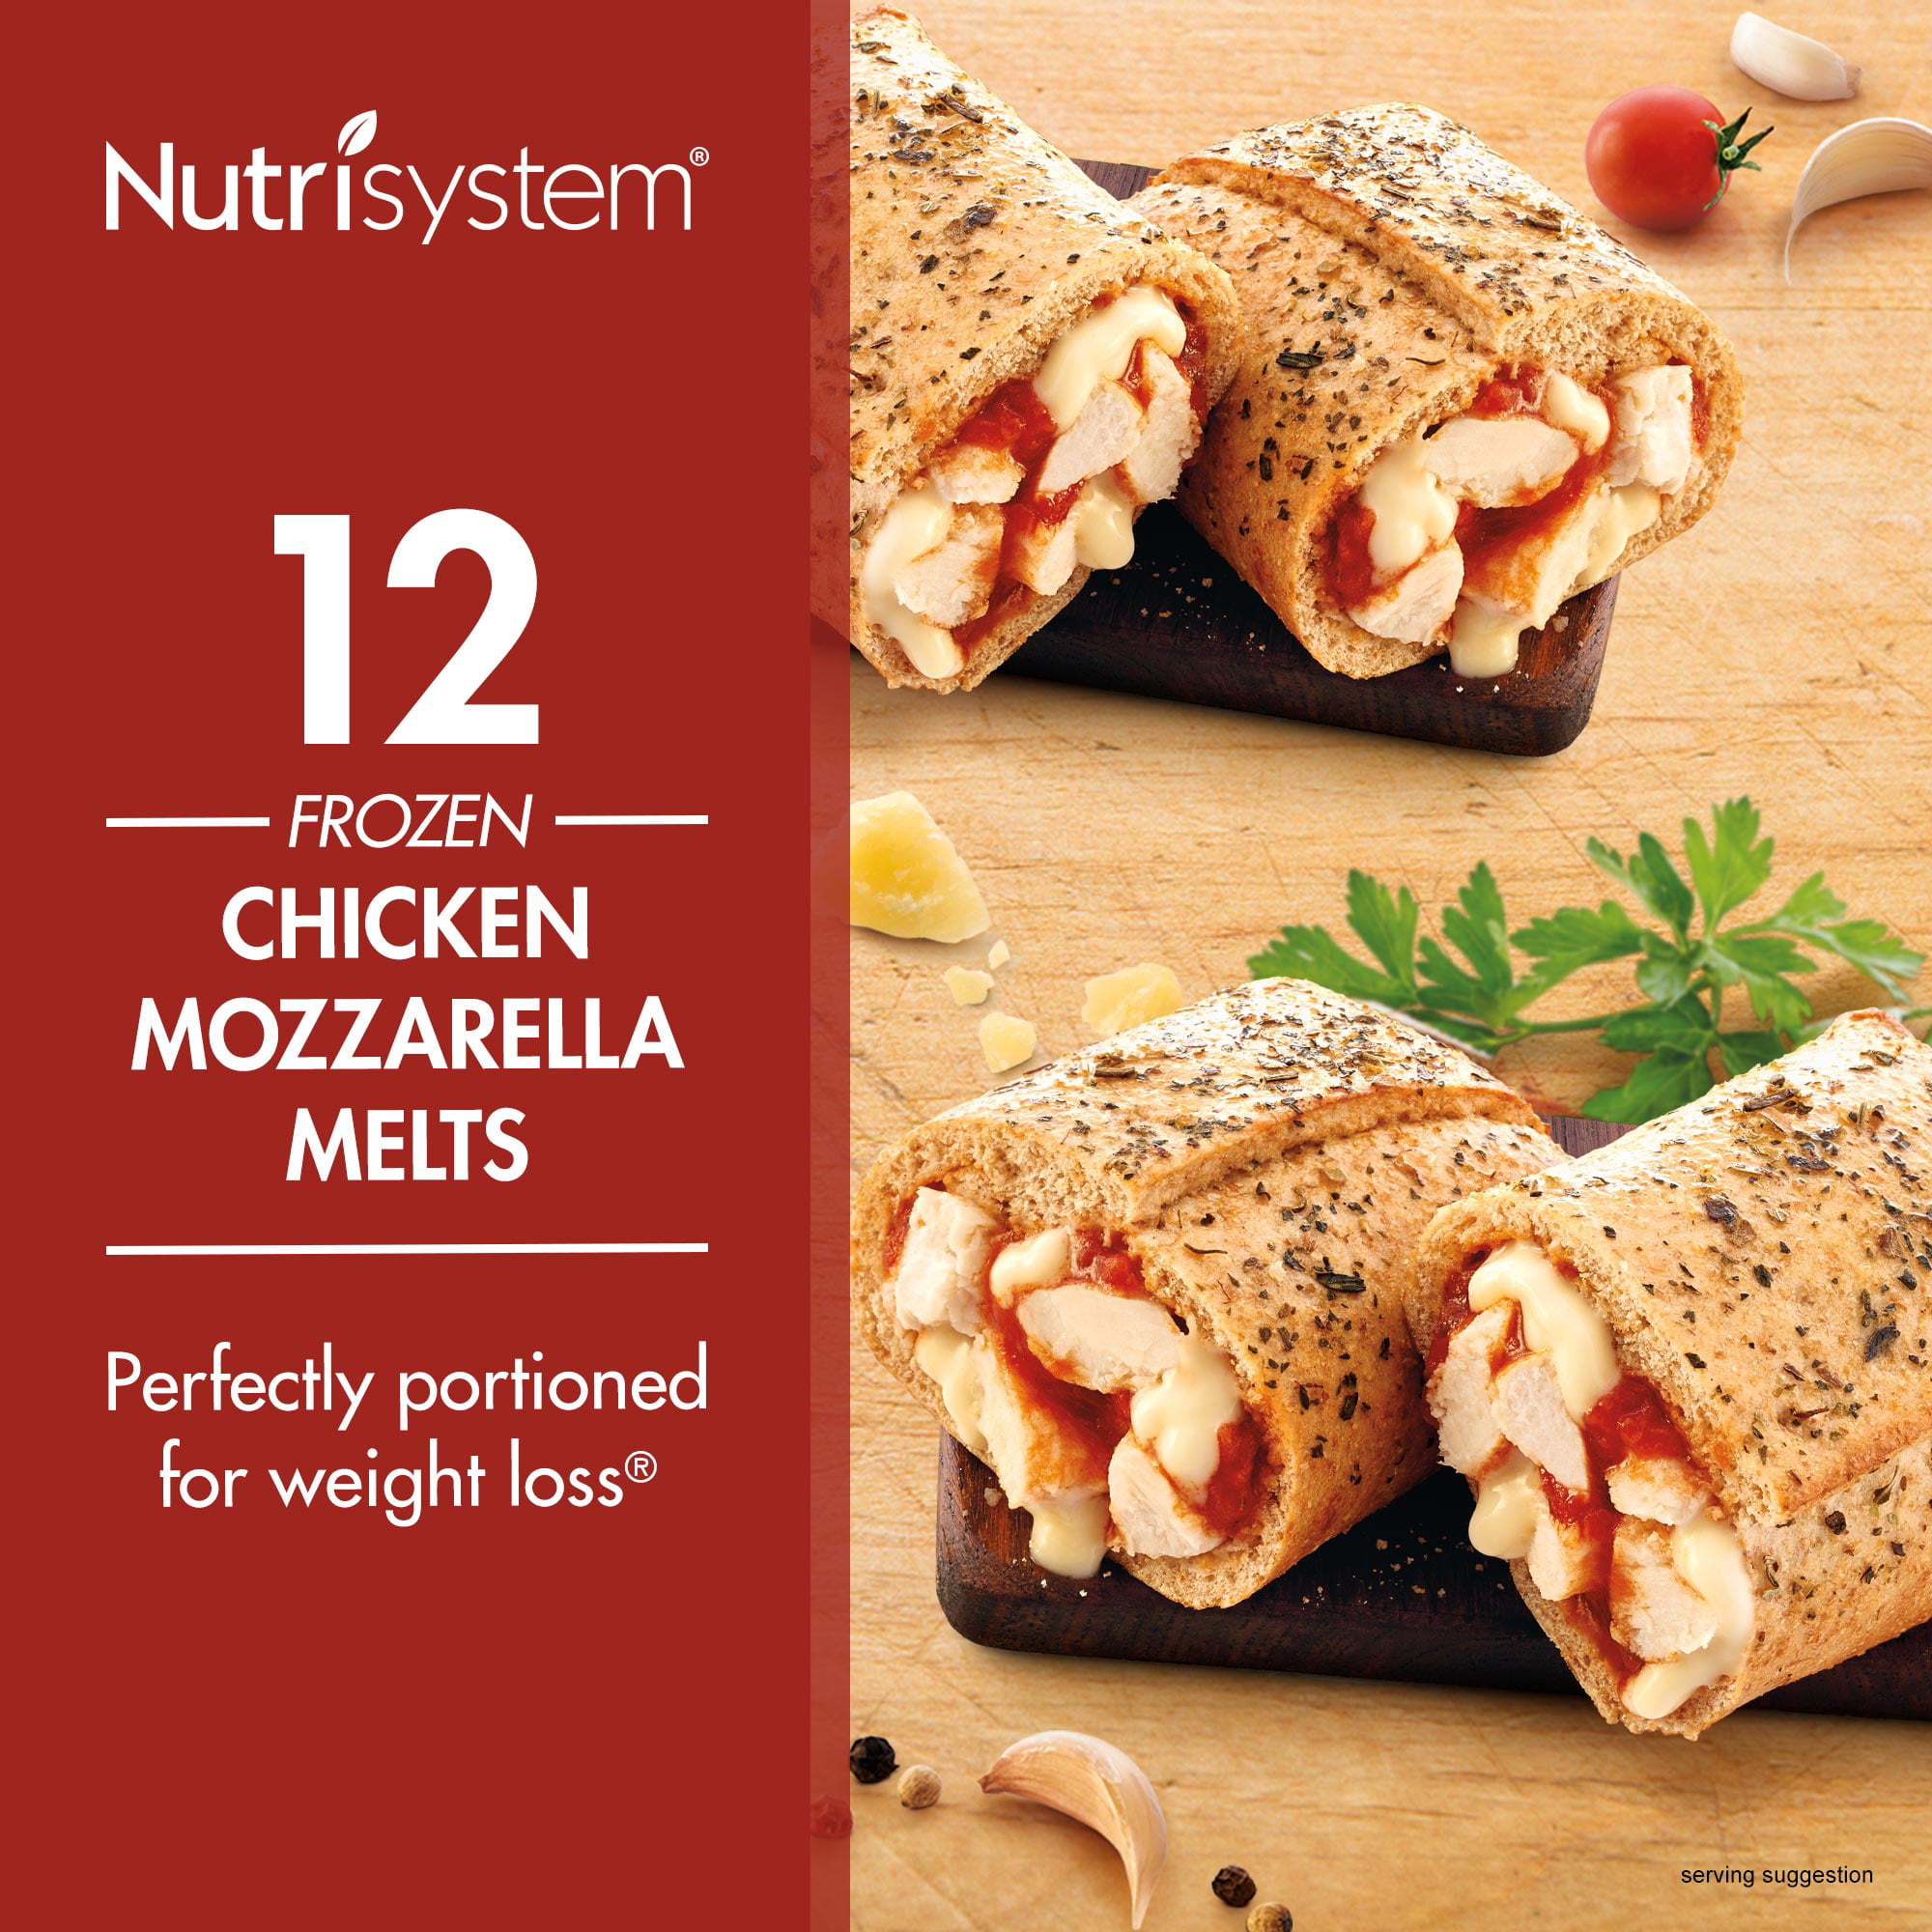 Nutrisystem Frozen Chicken Mozzarella Lunch Melt, 3.8 Oz, 12 Count ...